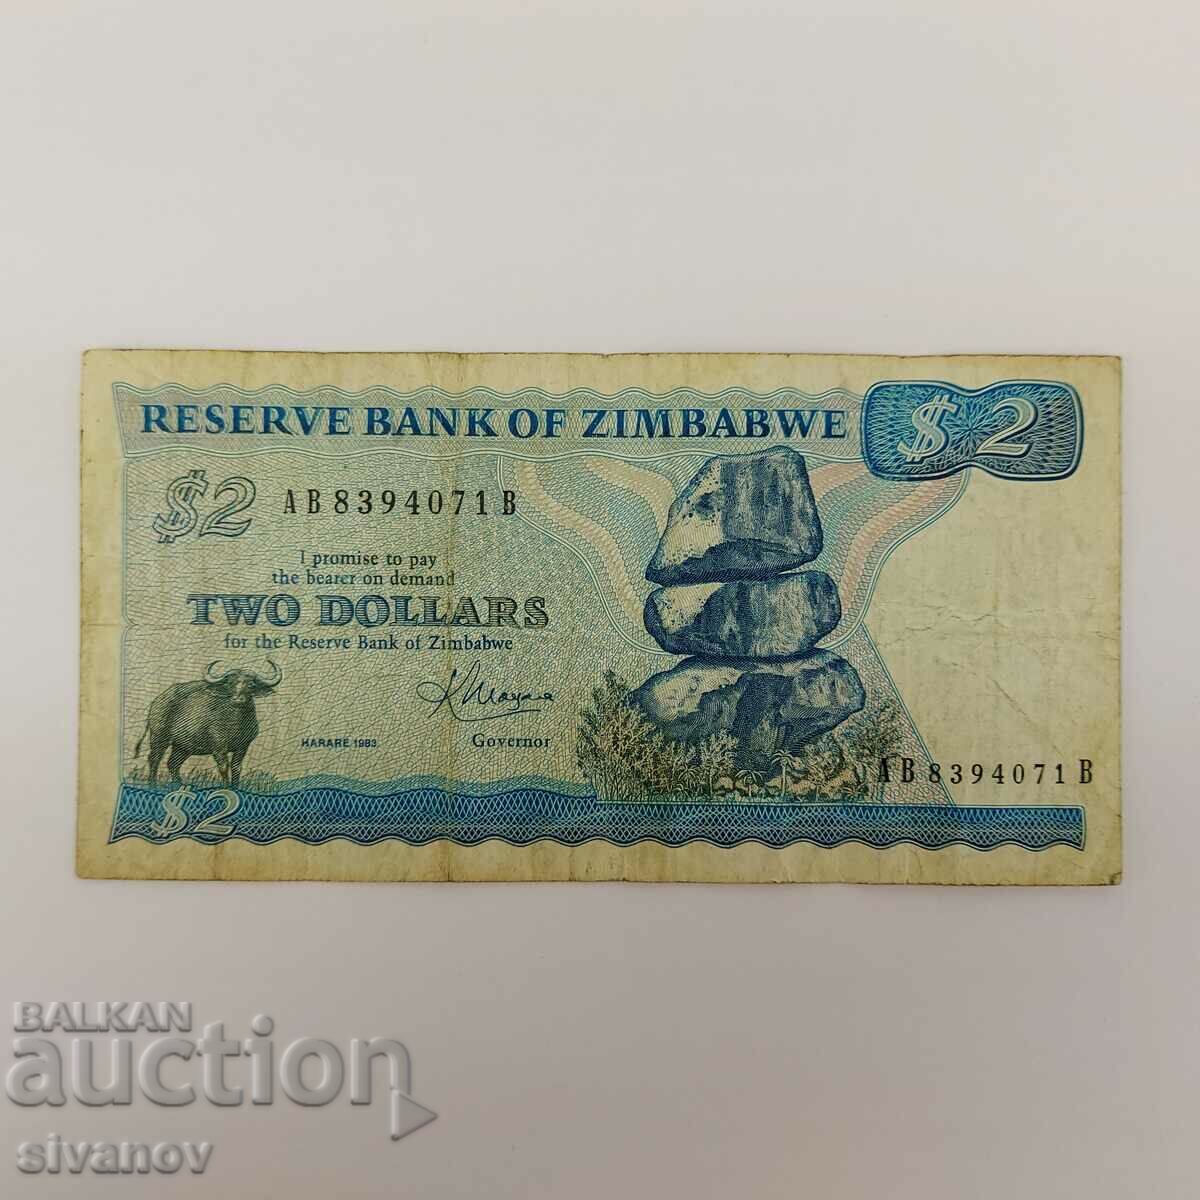 Zimbabwe $ 2 1983 # 3917